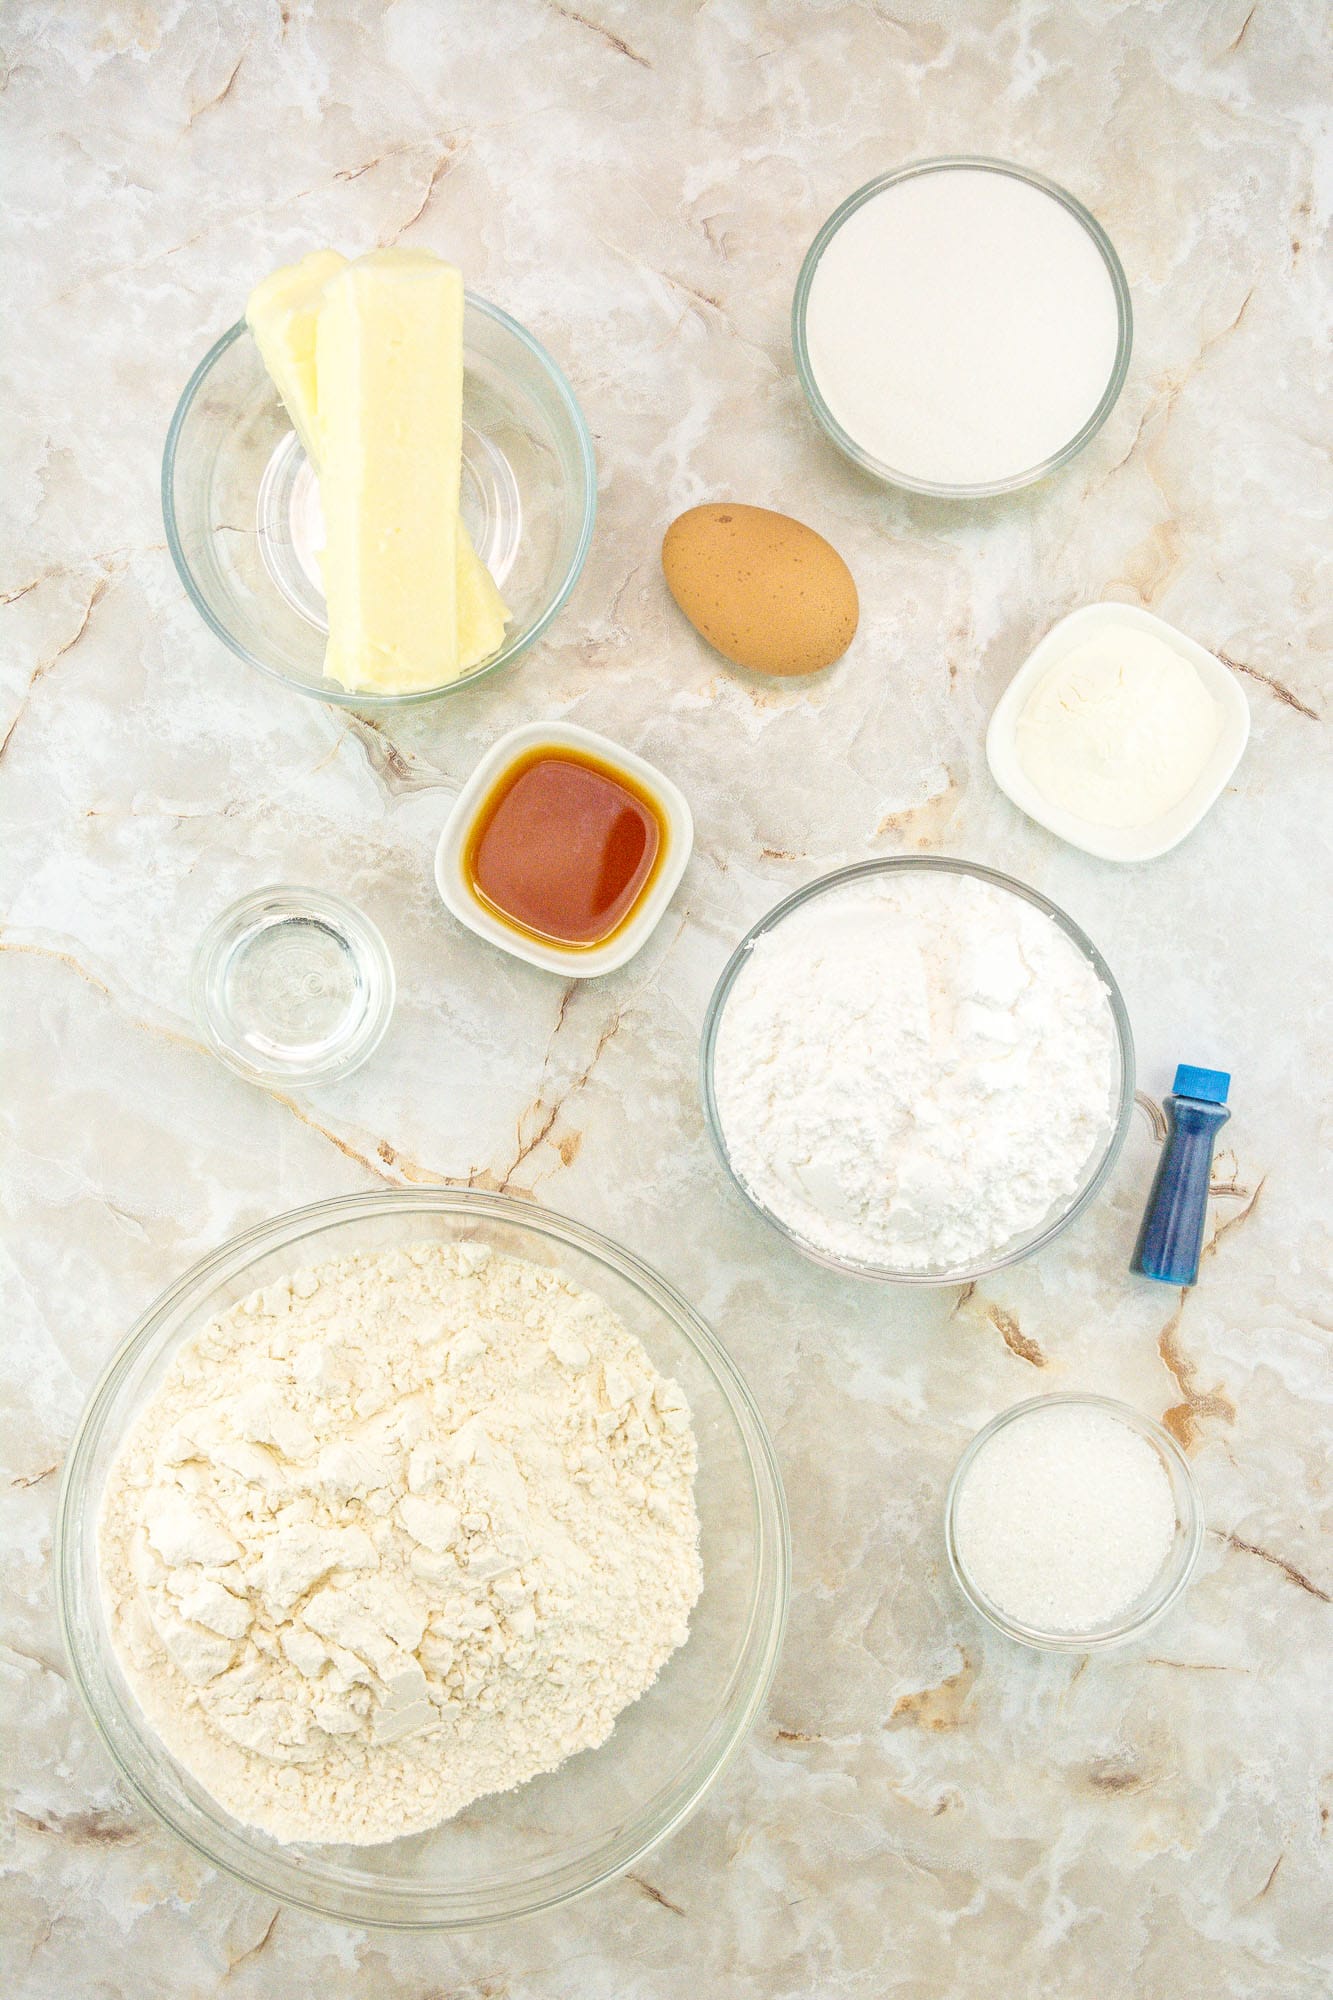 Ingredients needed to make sugar cookies